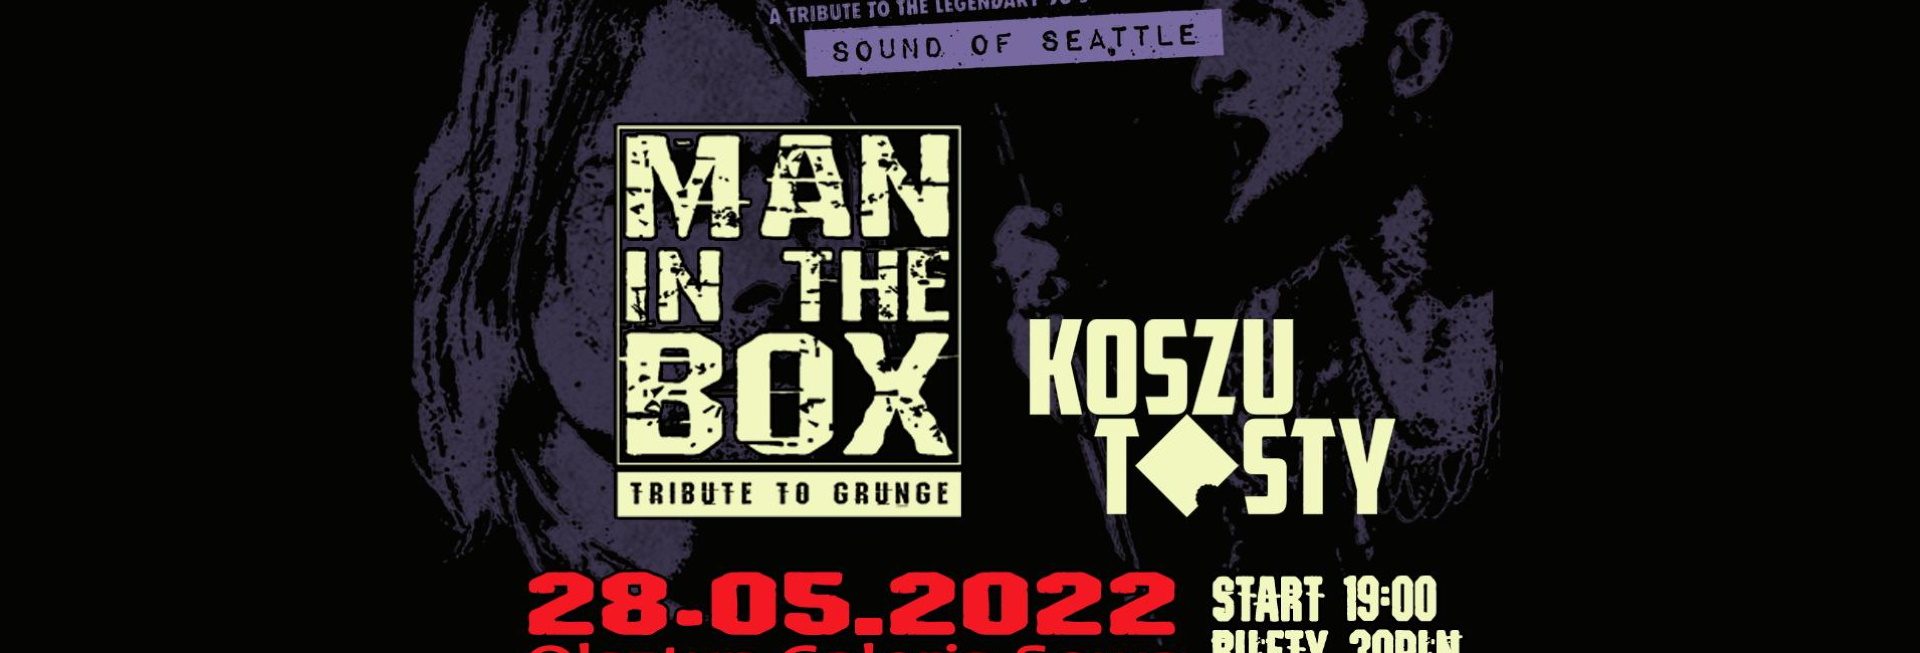 Plakat graficzny zapraszający do Olsztyna na koncert zespołu Man in the Box - Tribute to grunge OLSZTYN 2022.